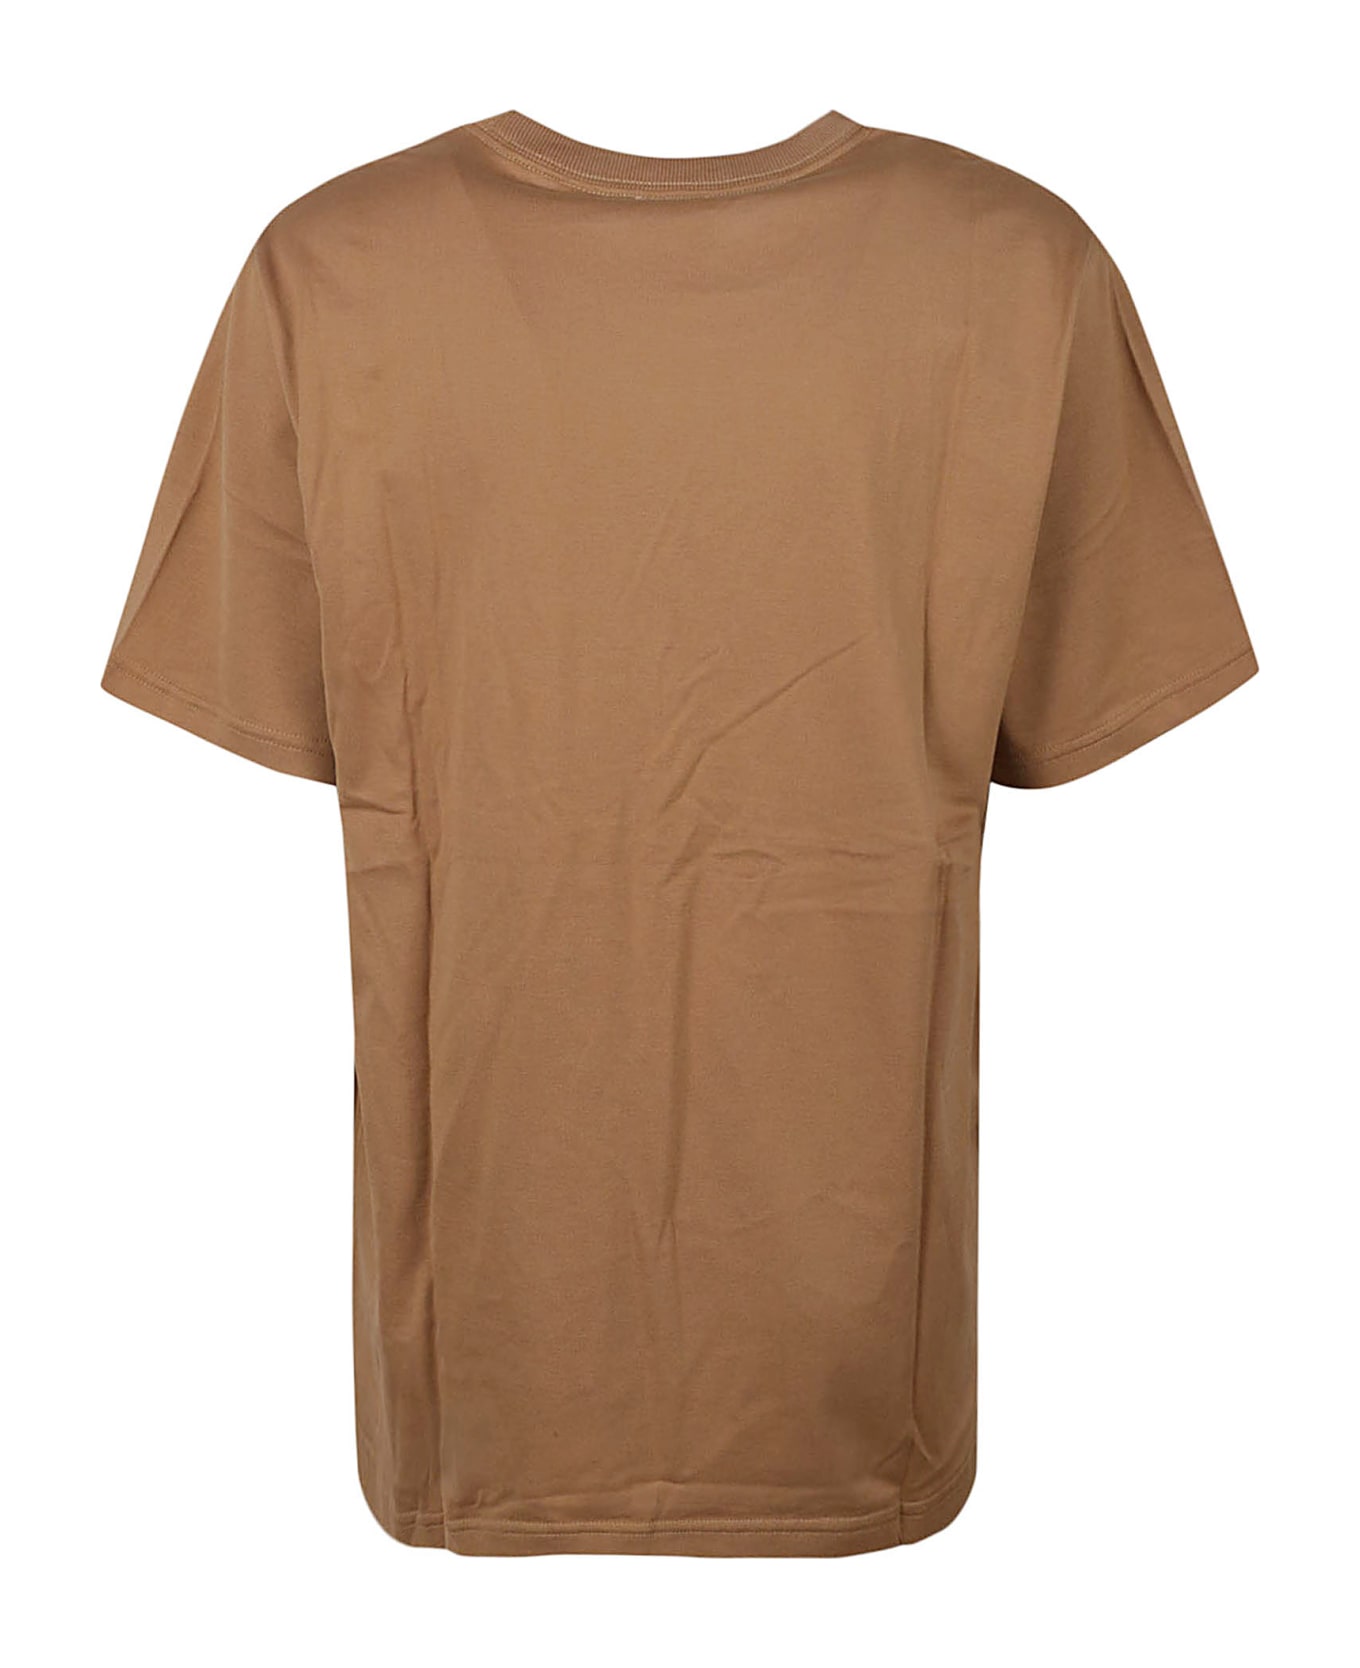 Burberry Margot T-shirt - Camel Tシャツ